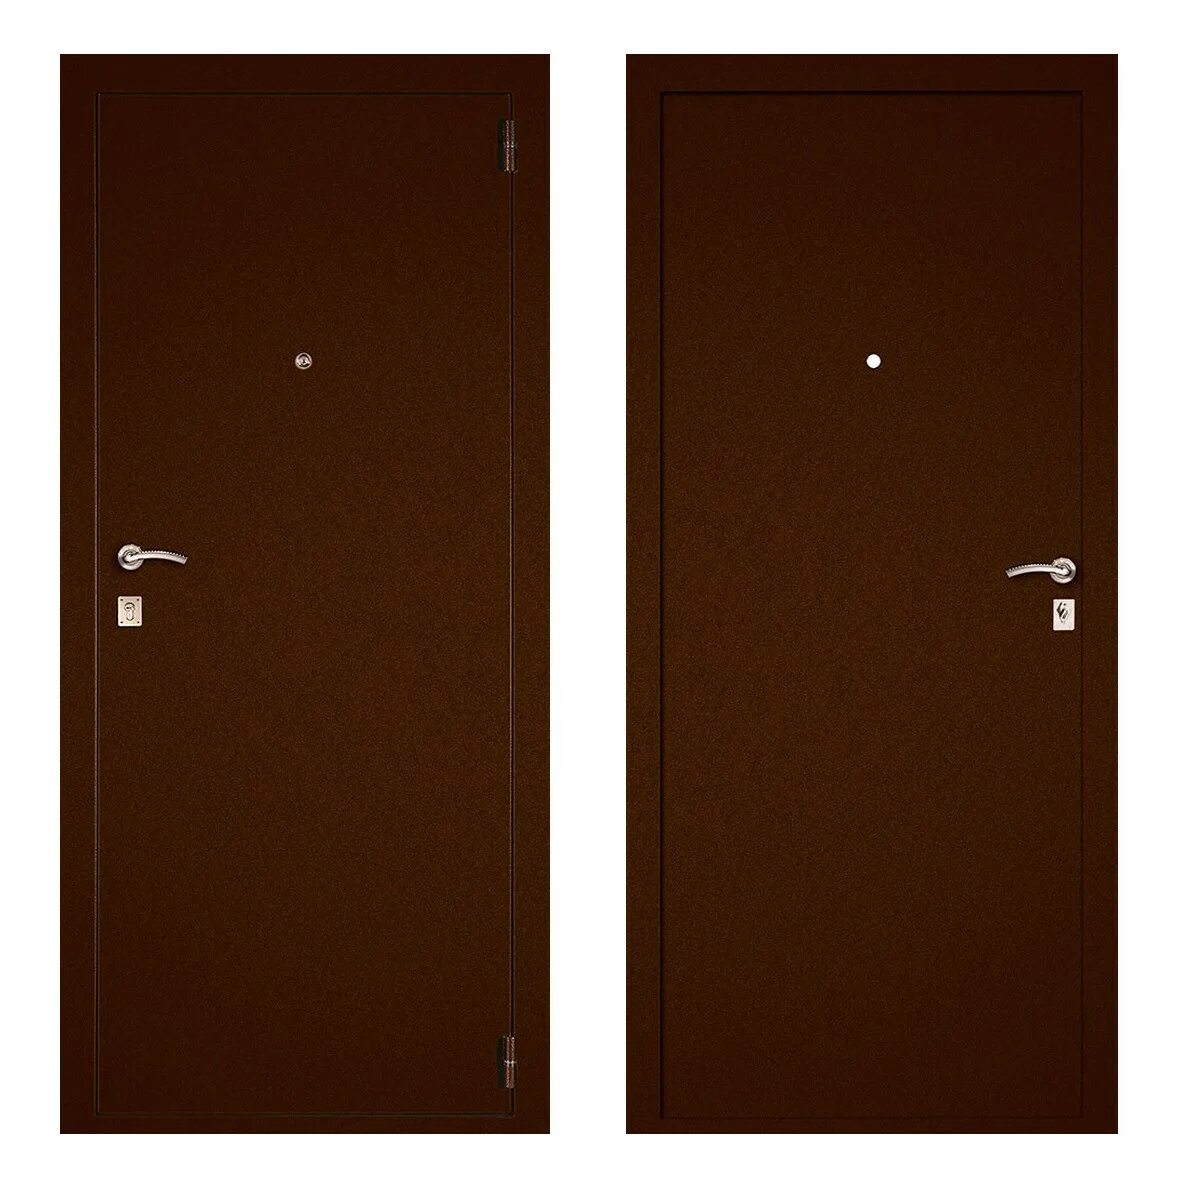 Бульдорс масс 70 металл металл. Дверь Бульдорс масс 70. Дверь металлическая стандарт 880х2050 "л". Дверь входная Йошкар (7см) 2050х960мм, левая, металл/металл, антик медь.